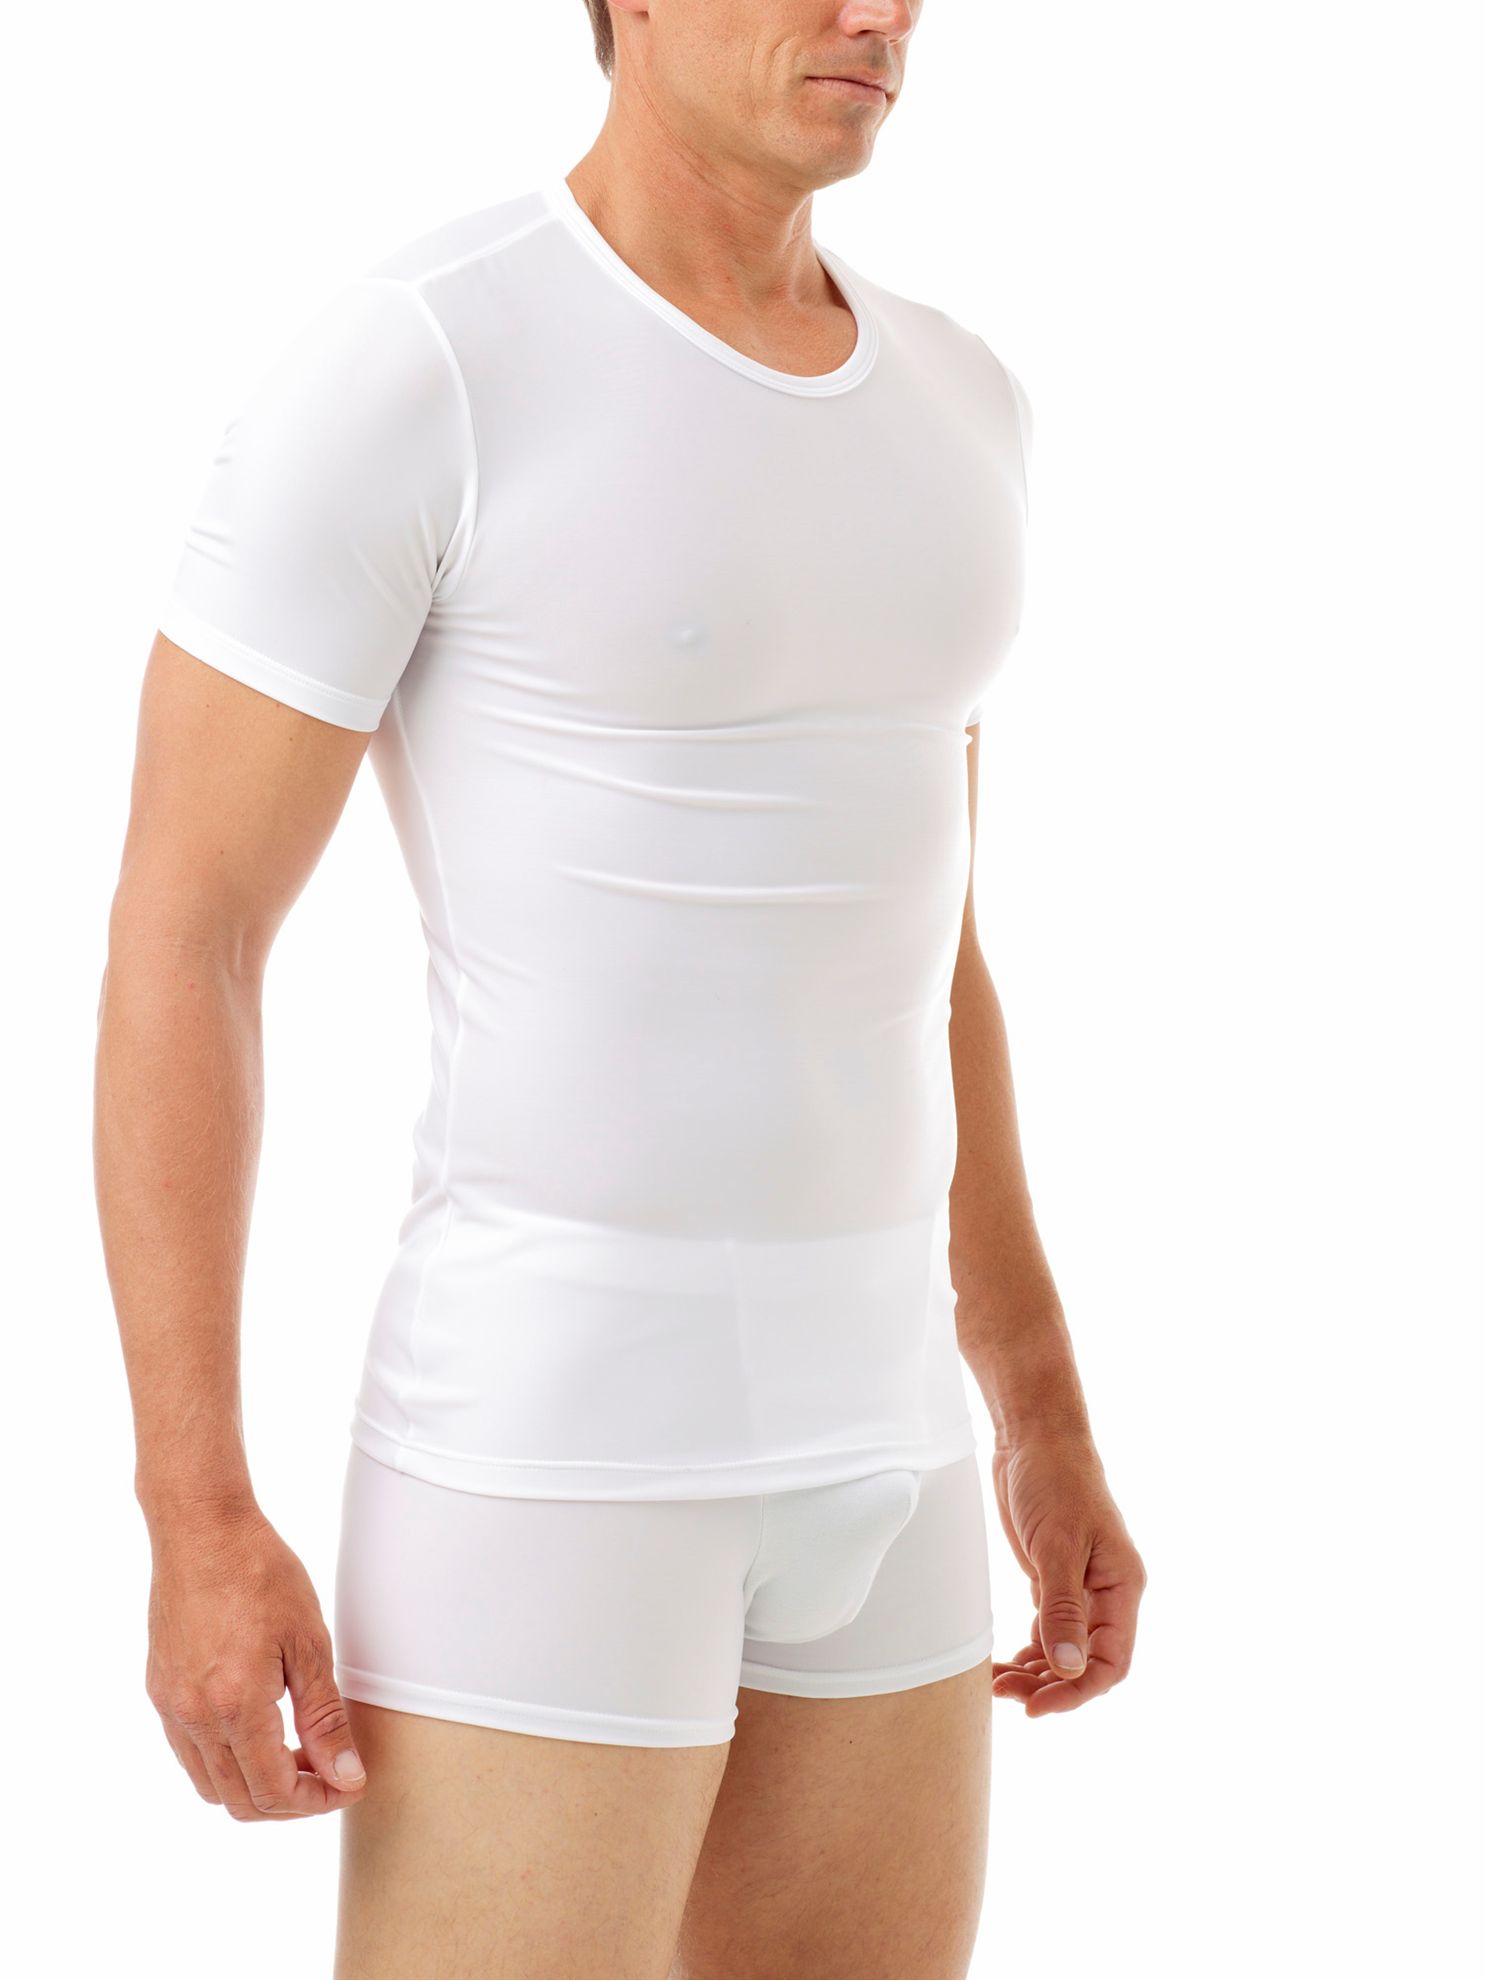 Underworks Manshape Hi-Rise Cotton Spandex Support & Shaping Underwear -  White - M